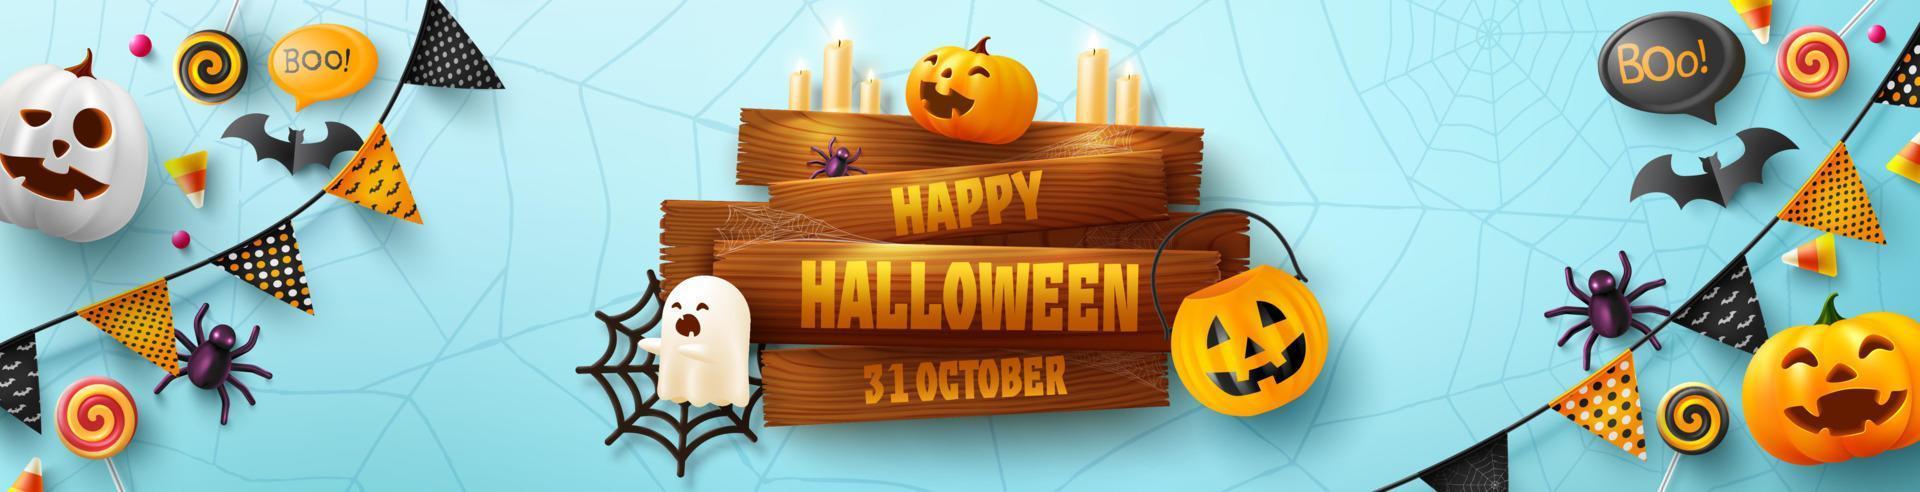 halloween-banner-vorlage mit altem holzbrett, halloween-geisterballons, kürbis. unheimliche luftballons, fledermaus, süßigkeiten und halloween-elemente auf blauem hintergrund vektor